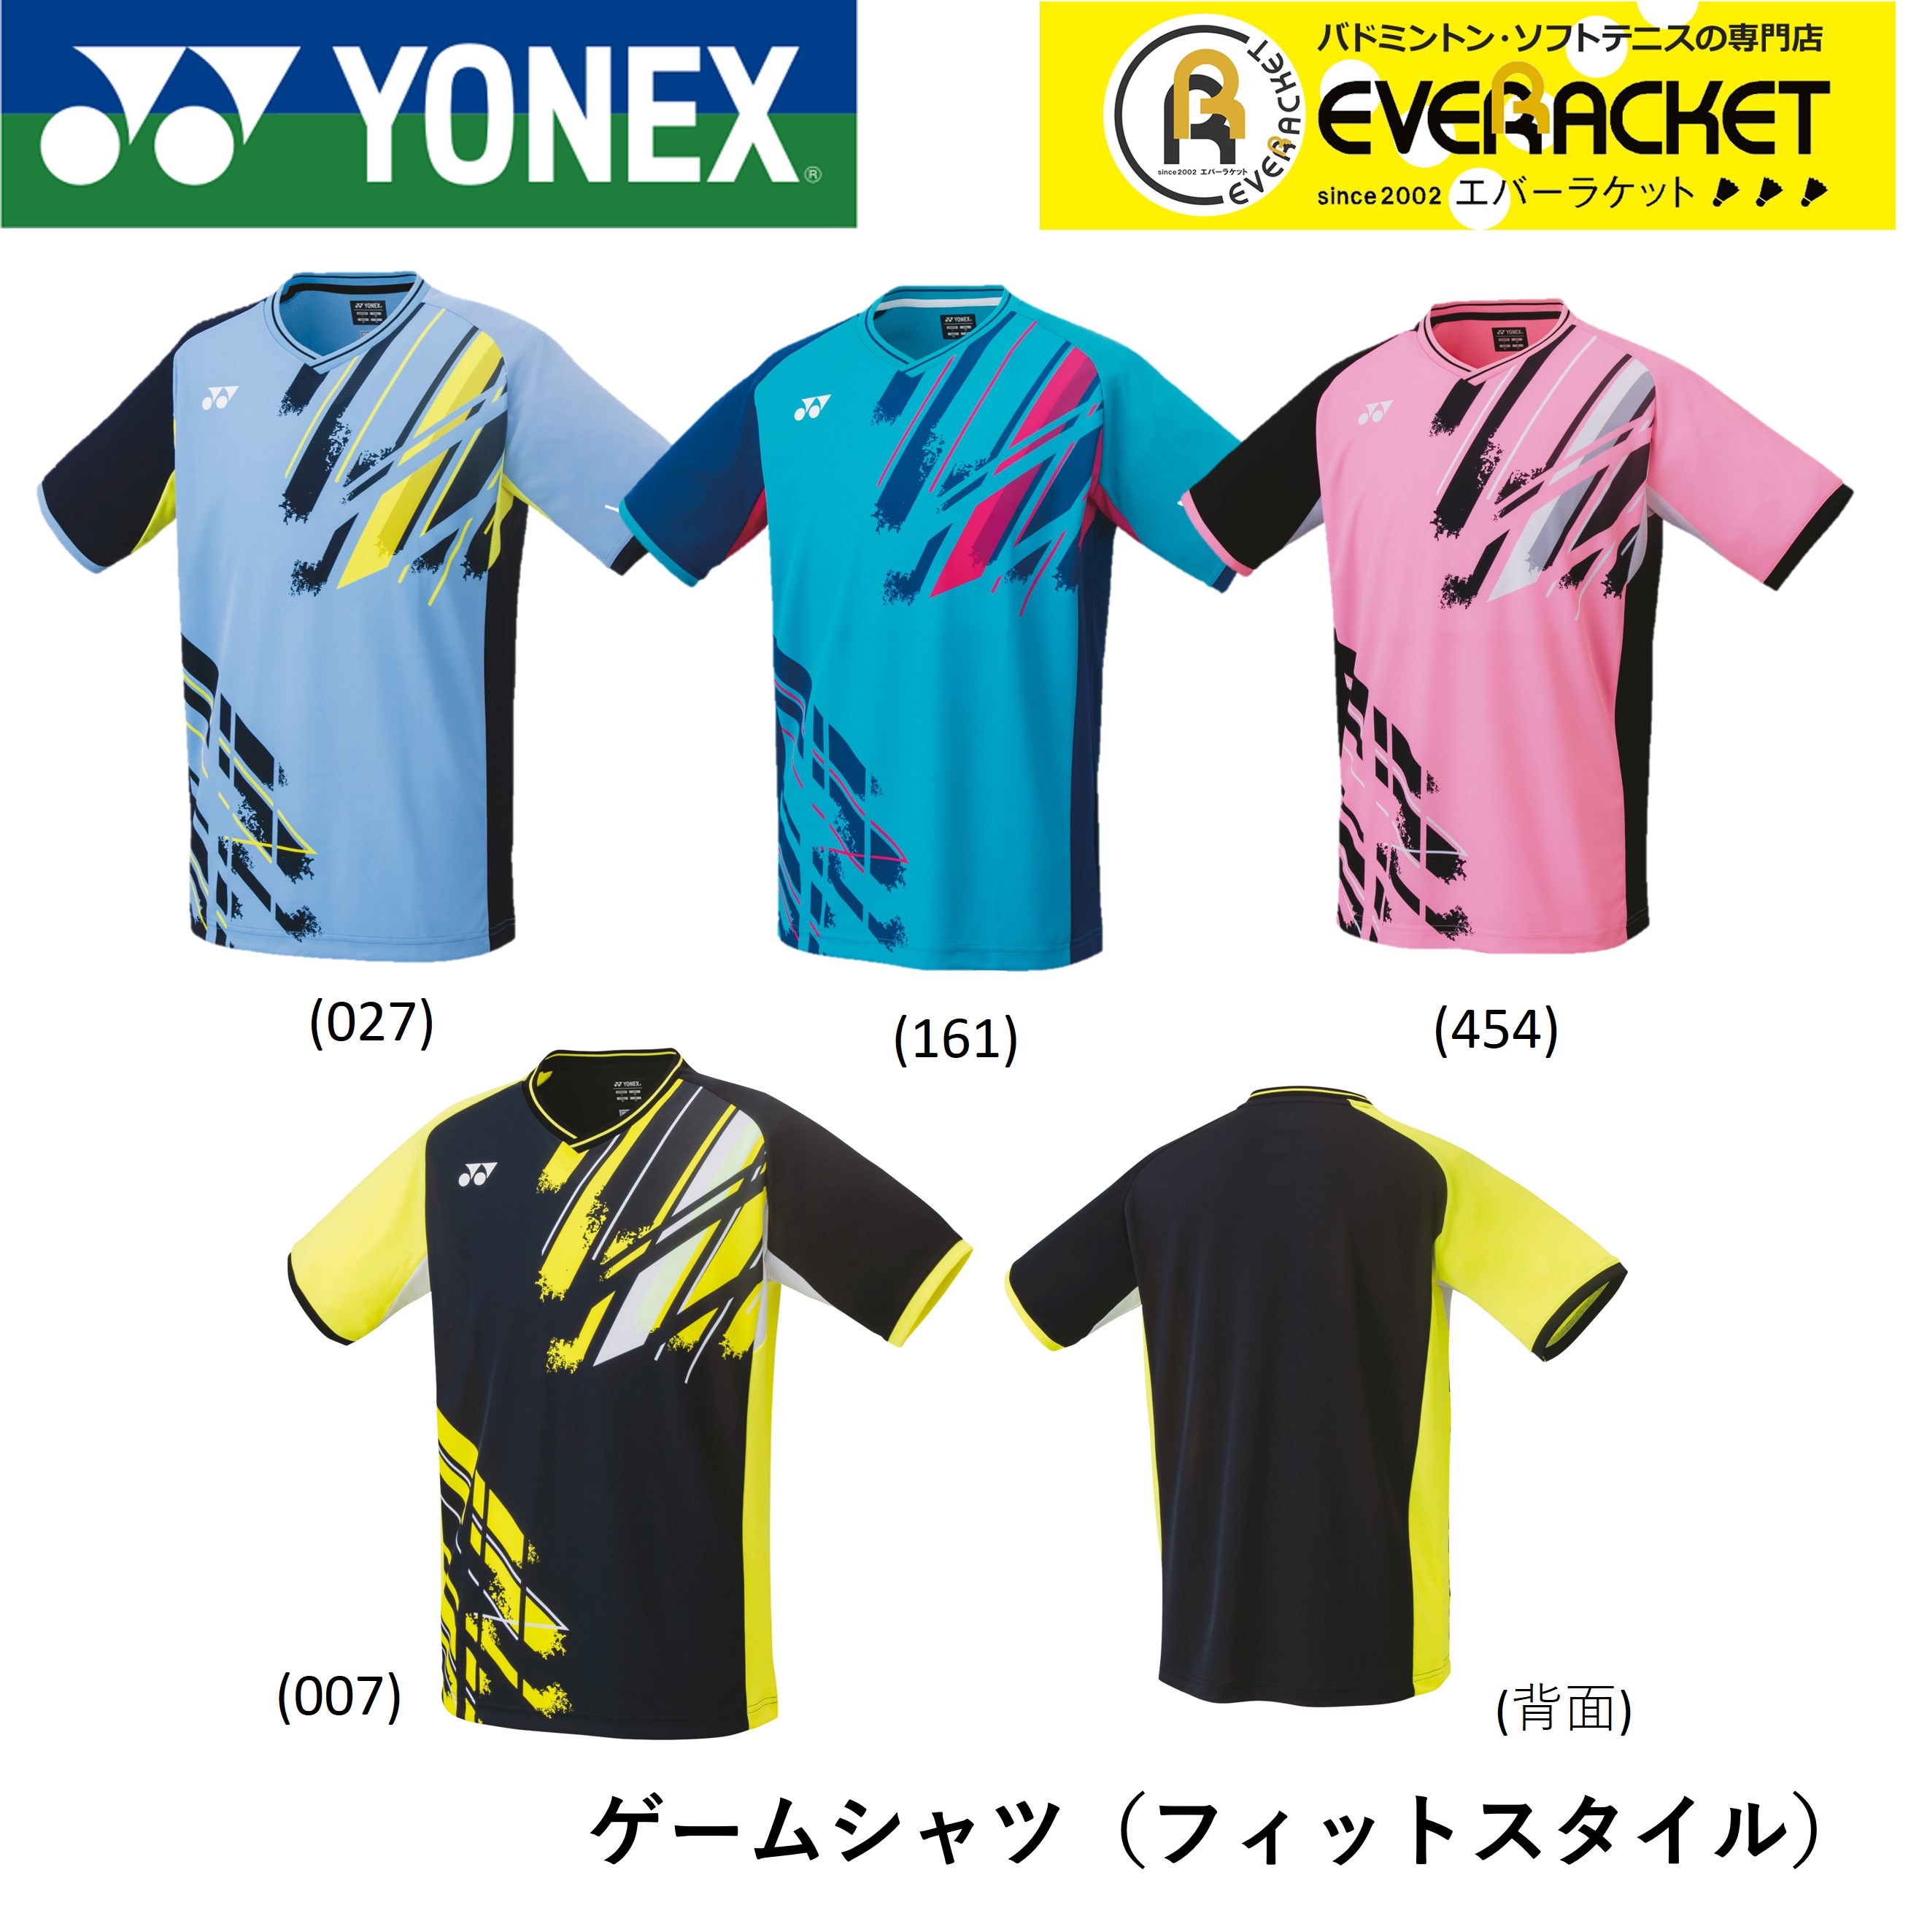 ヨネックス YONEX ウエア メンズゲームシャツ(フィットスタイル) 10446 バドミントン・テニス